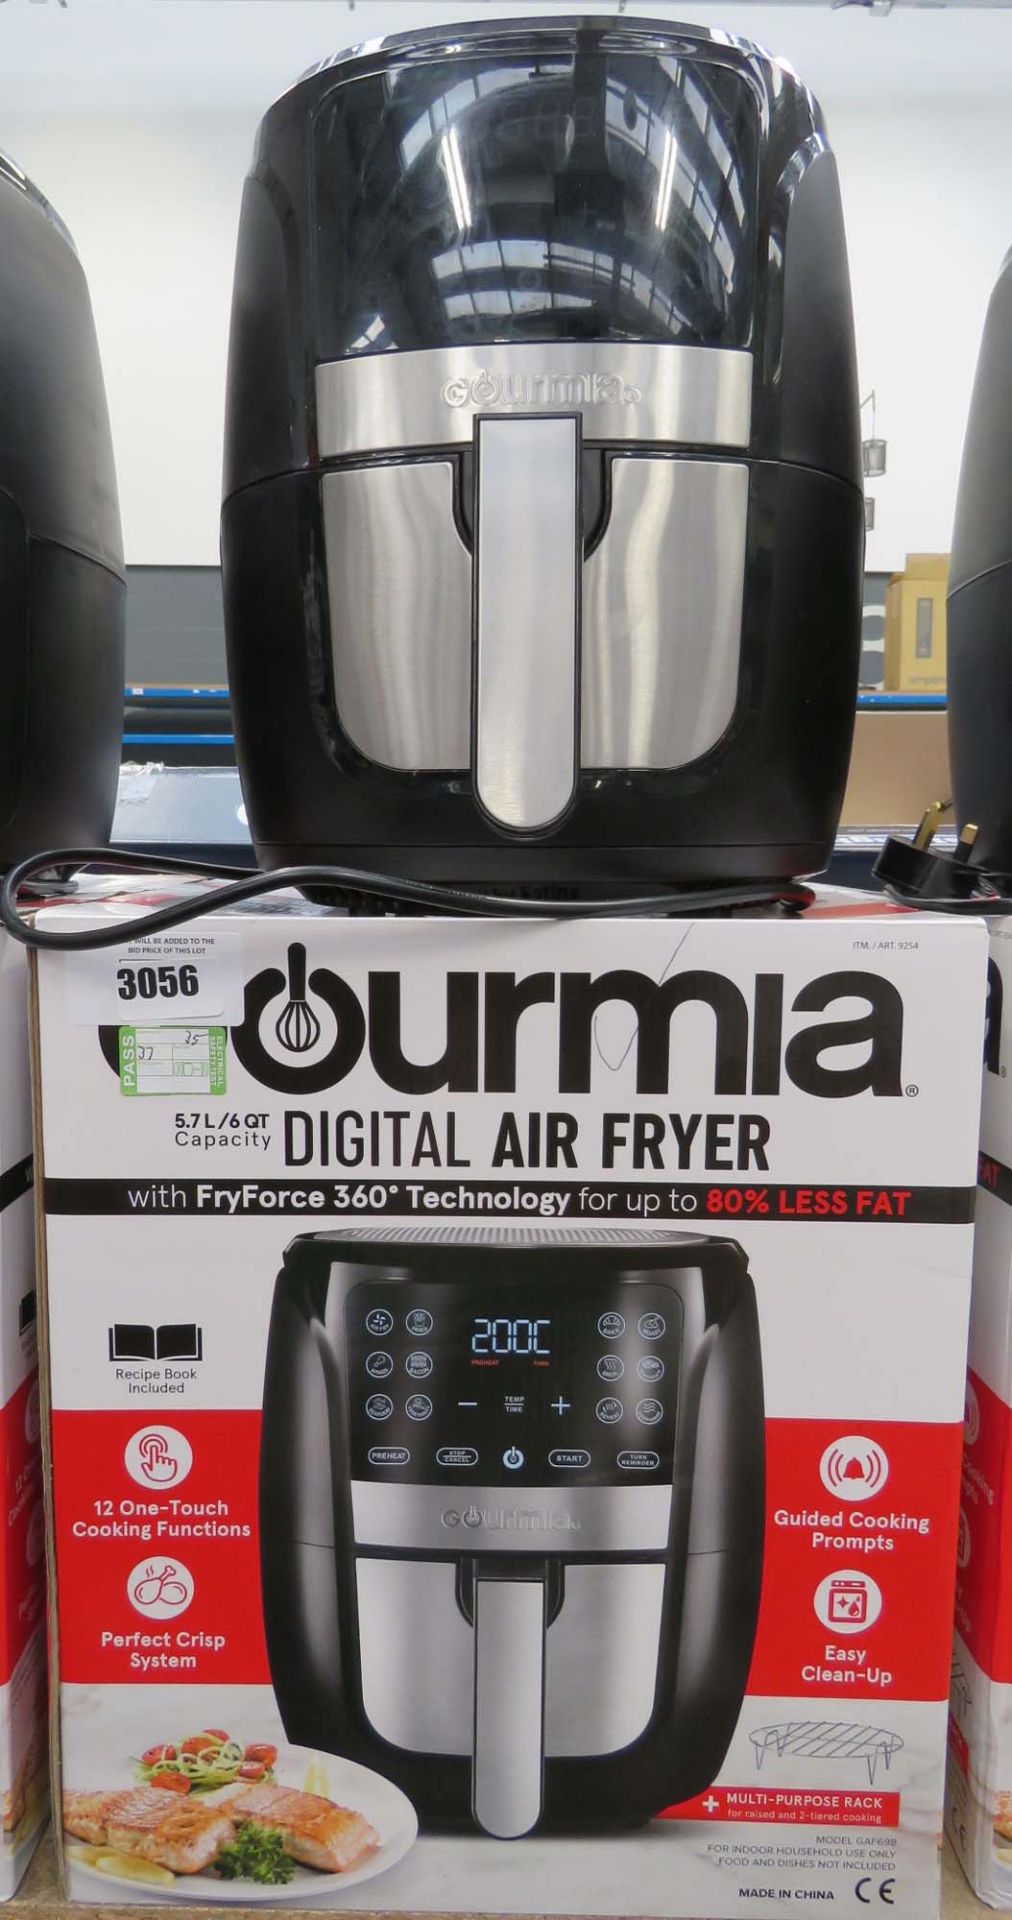 (35) Gourmet digital air fryer